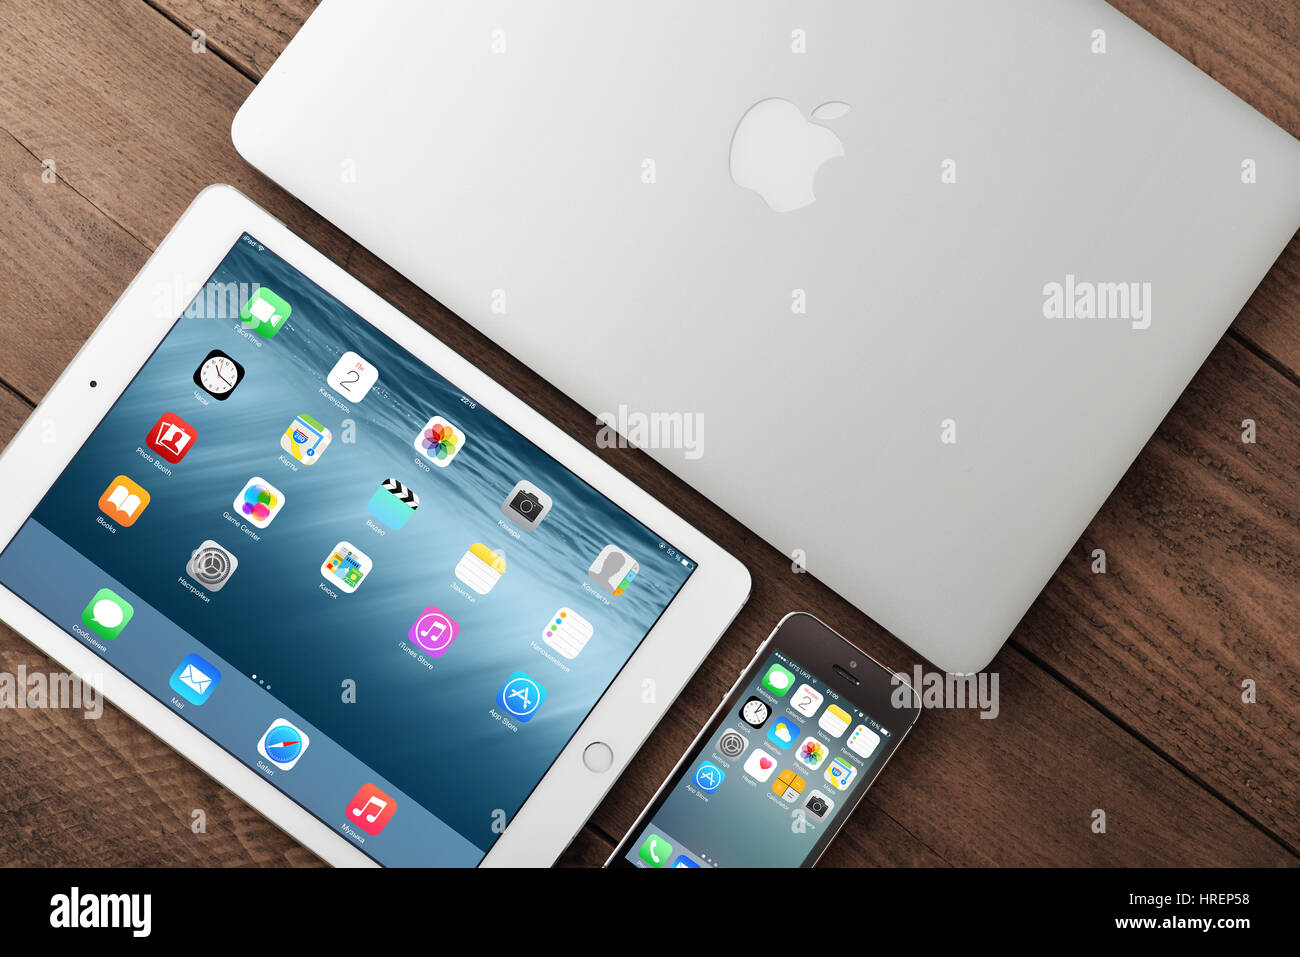 Kiew, UKRAINE - 29. Januar 2015: Apple iPhone 5 s, Air 2 iPad und MacBook Air auf Tisch. Apple Inc. ist ein amerikanisches multinationales Unternehmen, Desig Stockfoto